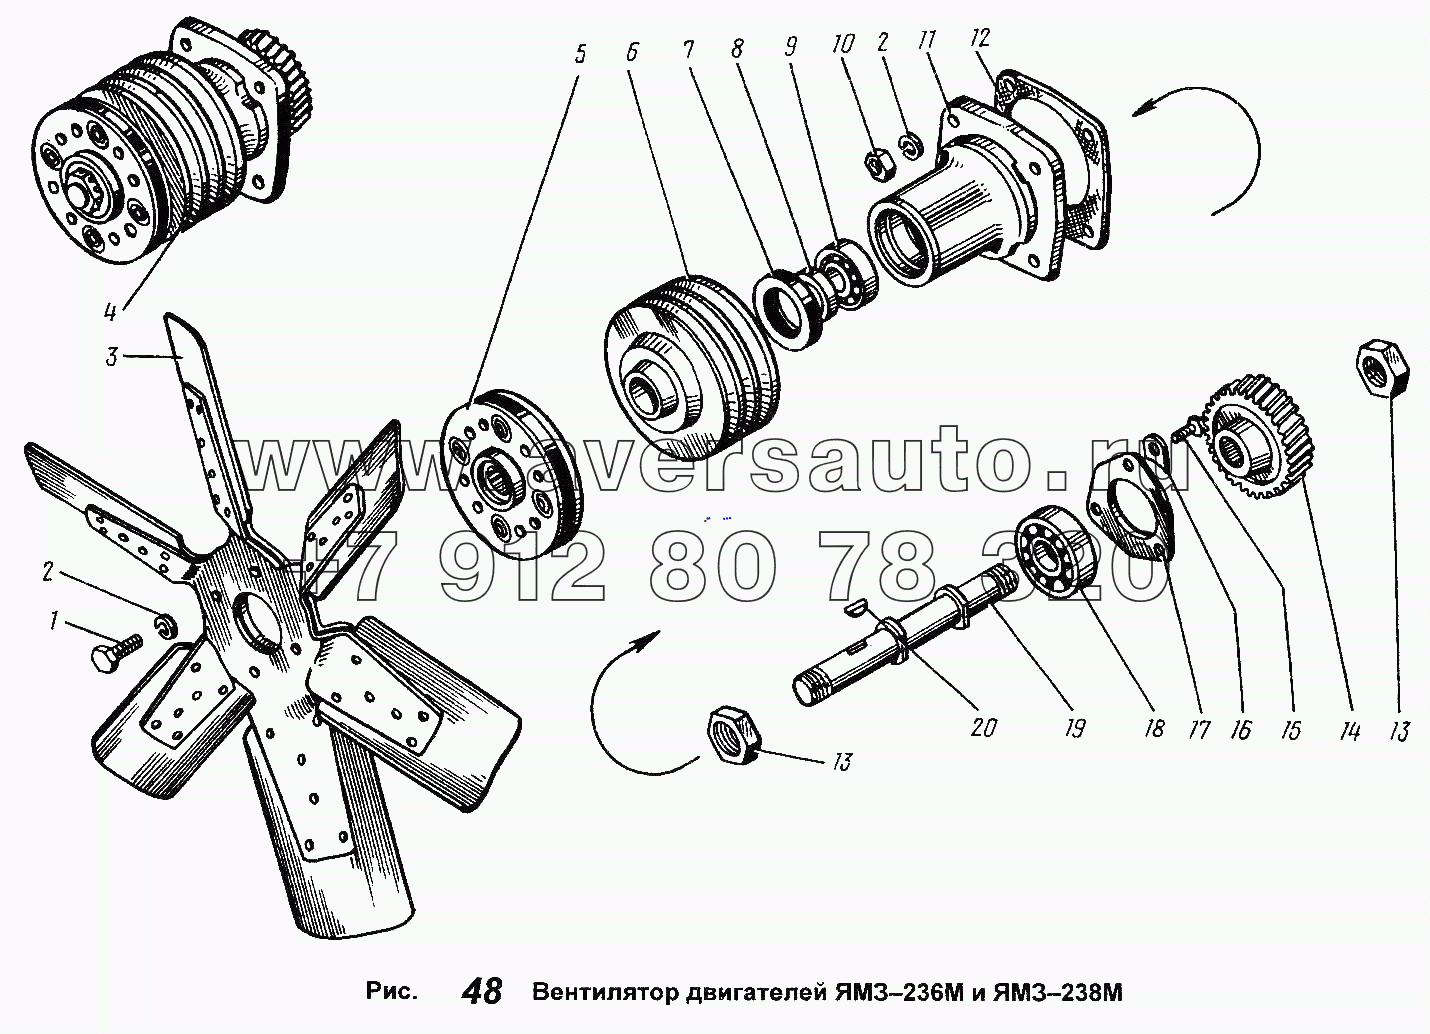 Вентилятор двигателей ЯМЗ-236М и ЯМЗ-238М